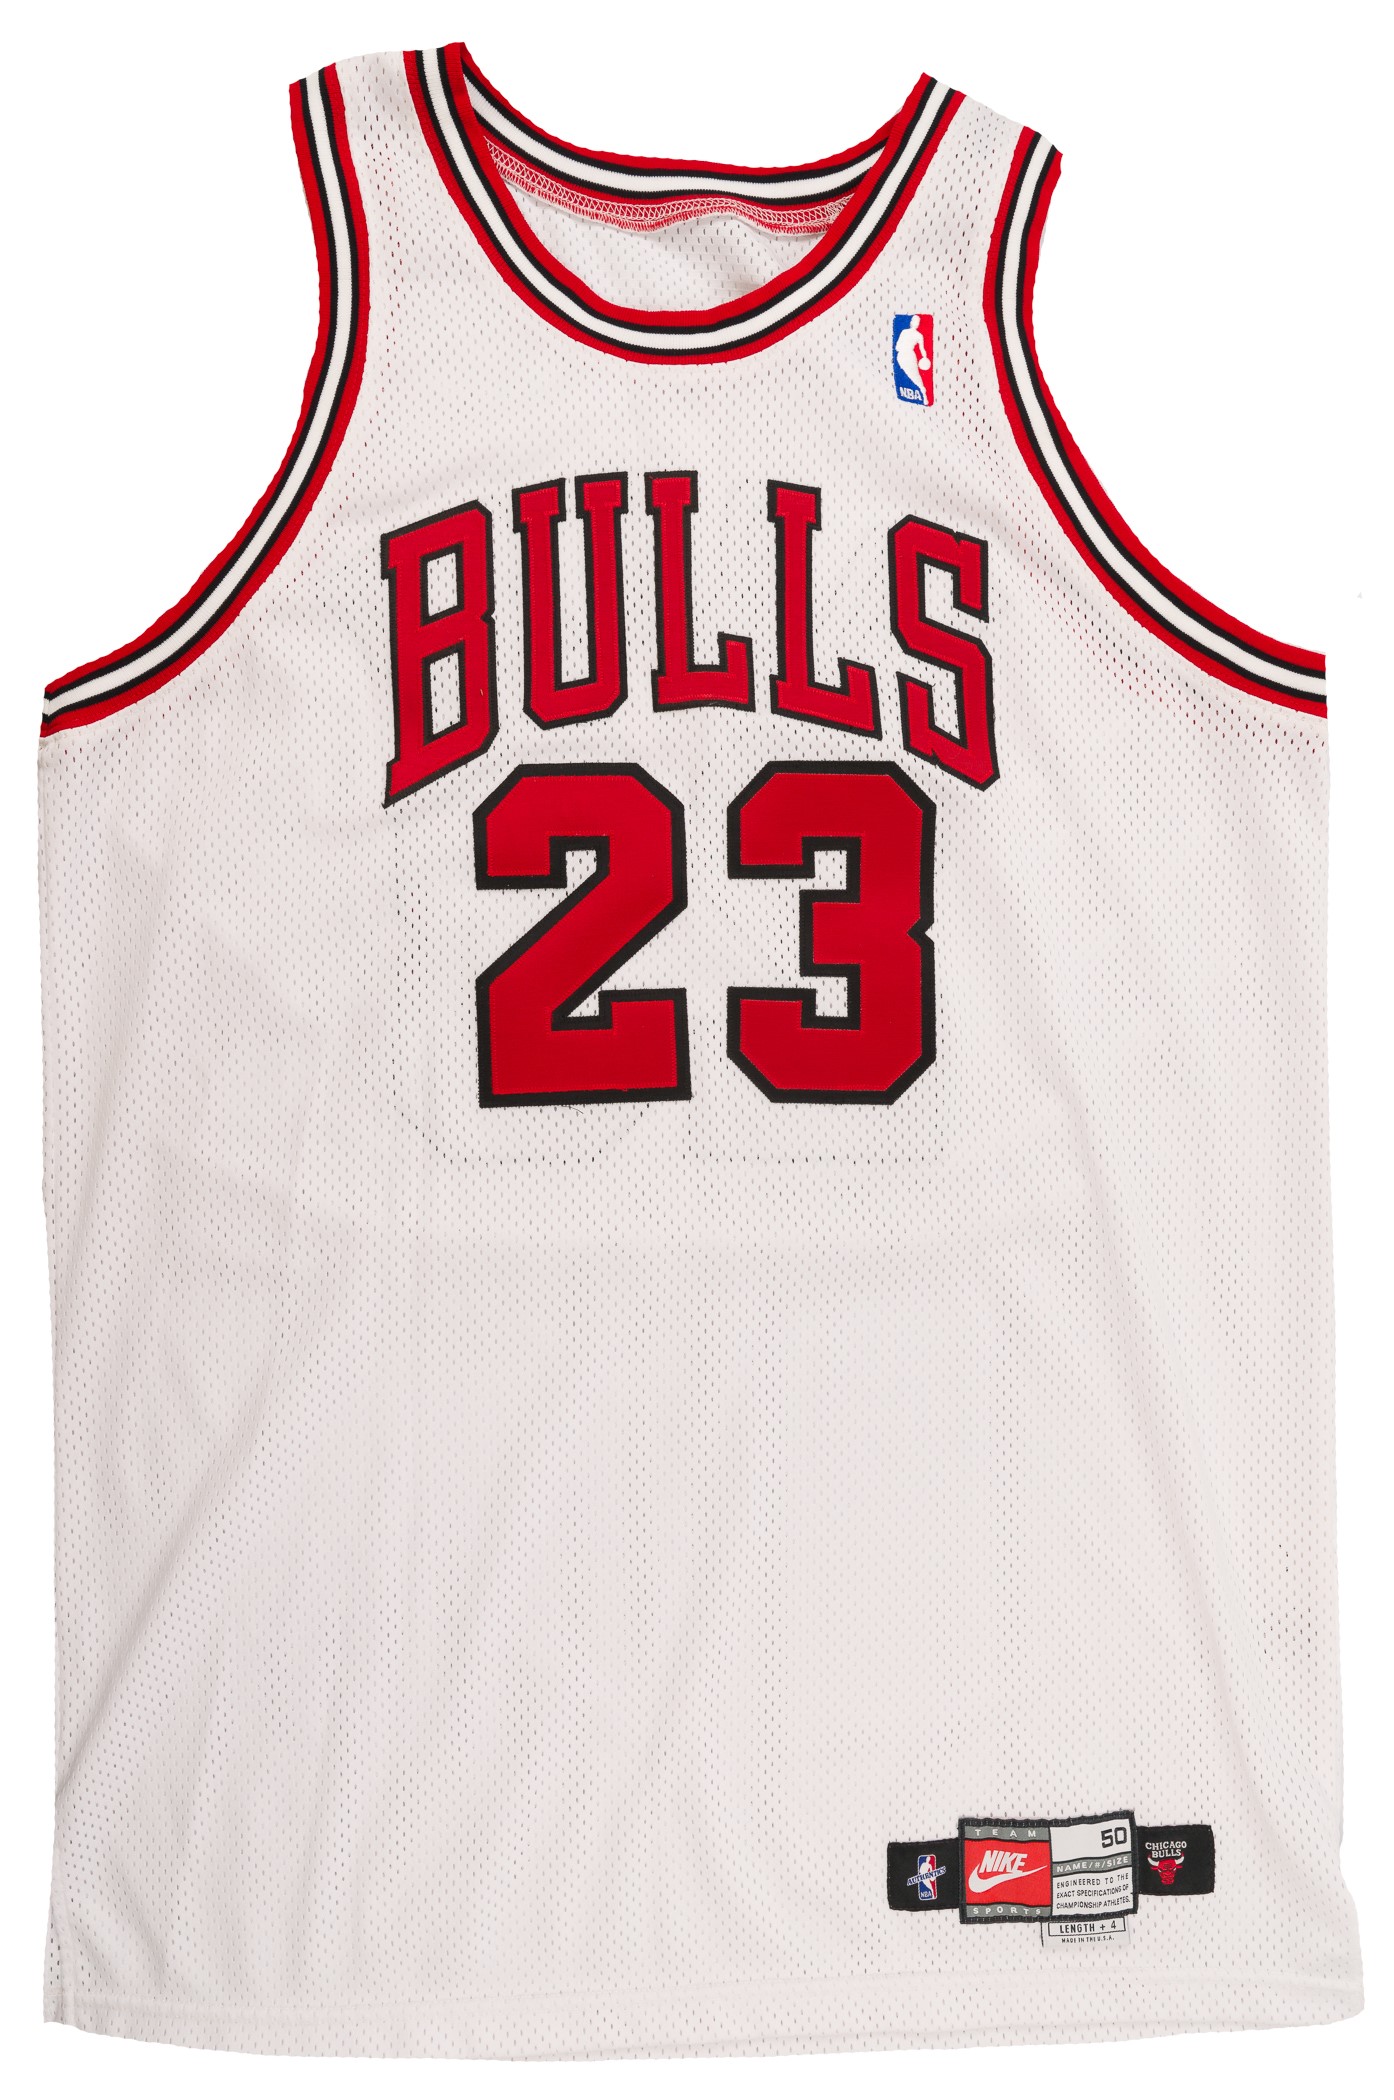 Michael Jordan Signed Chicago Bulls Jersey - Authentic Memorabilia